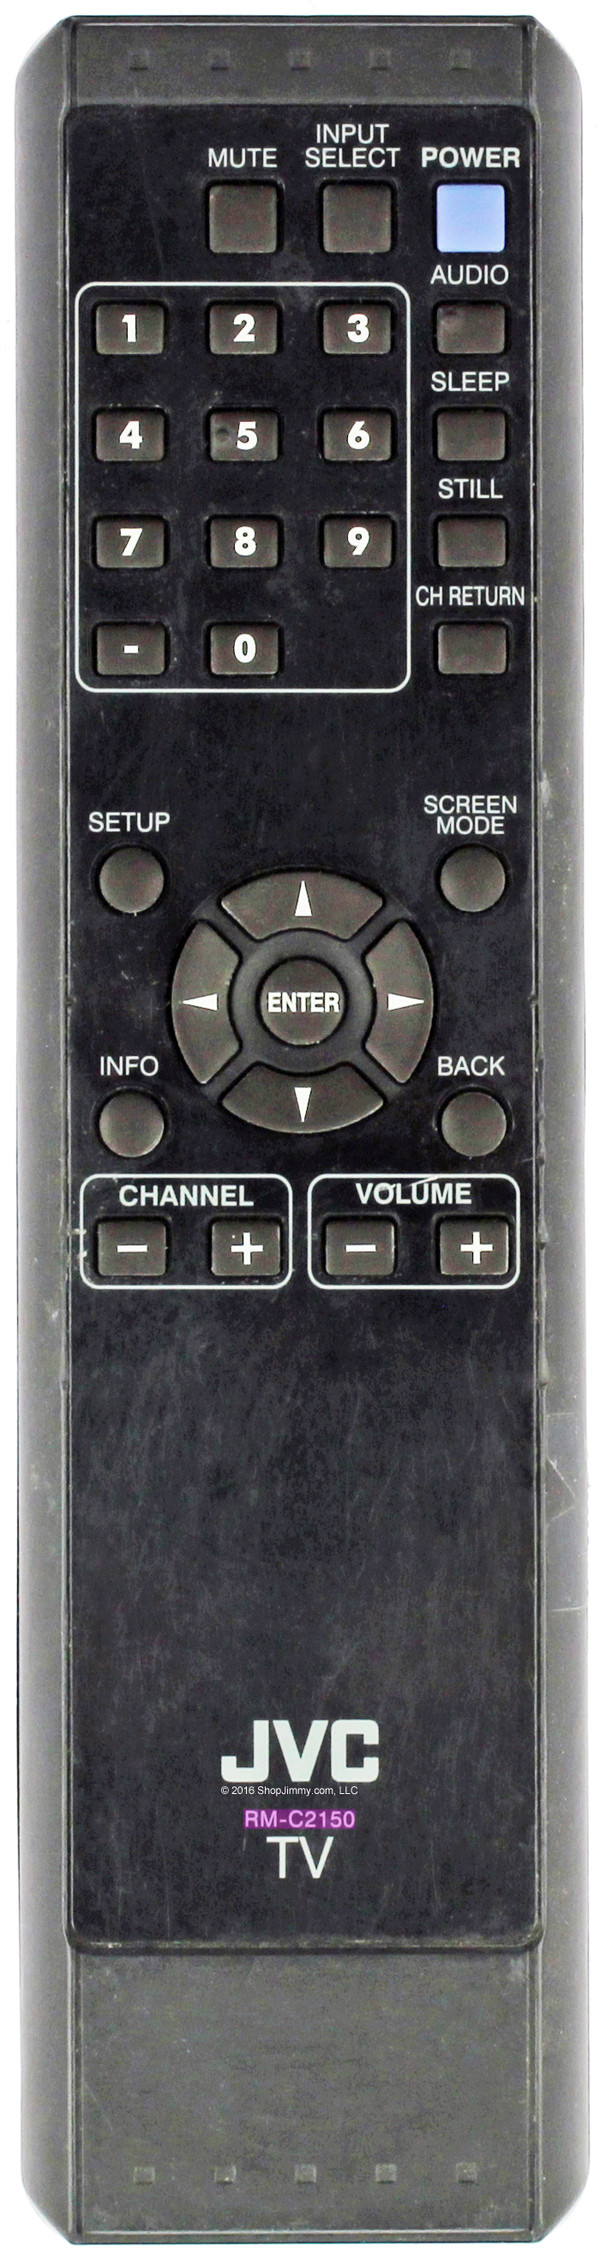 JVC RM-C2150 Remote Control for LT-32EM20 LT-32A200 LT-19A200